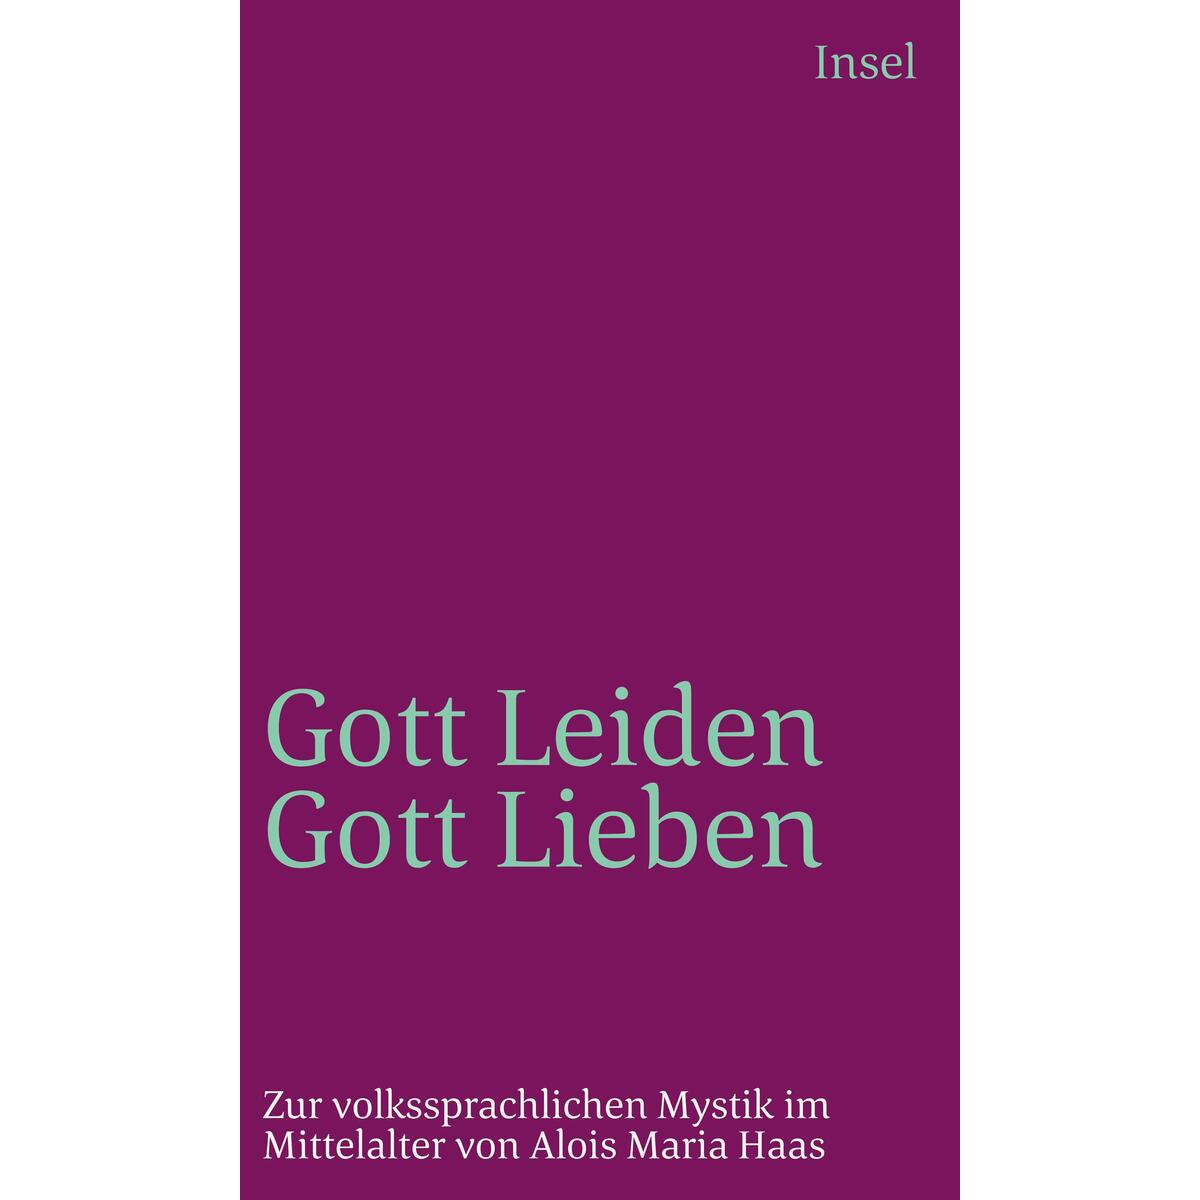 Gottleiden - Gottlieben von Insel Verlag GmbH